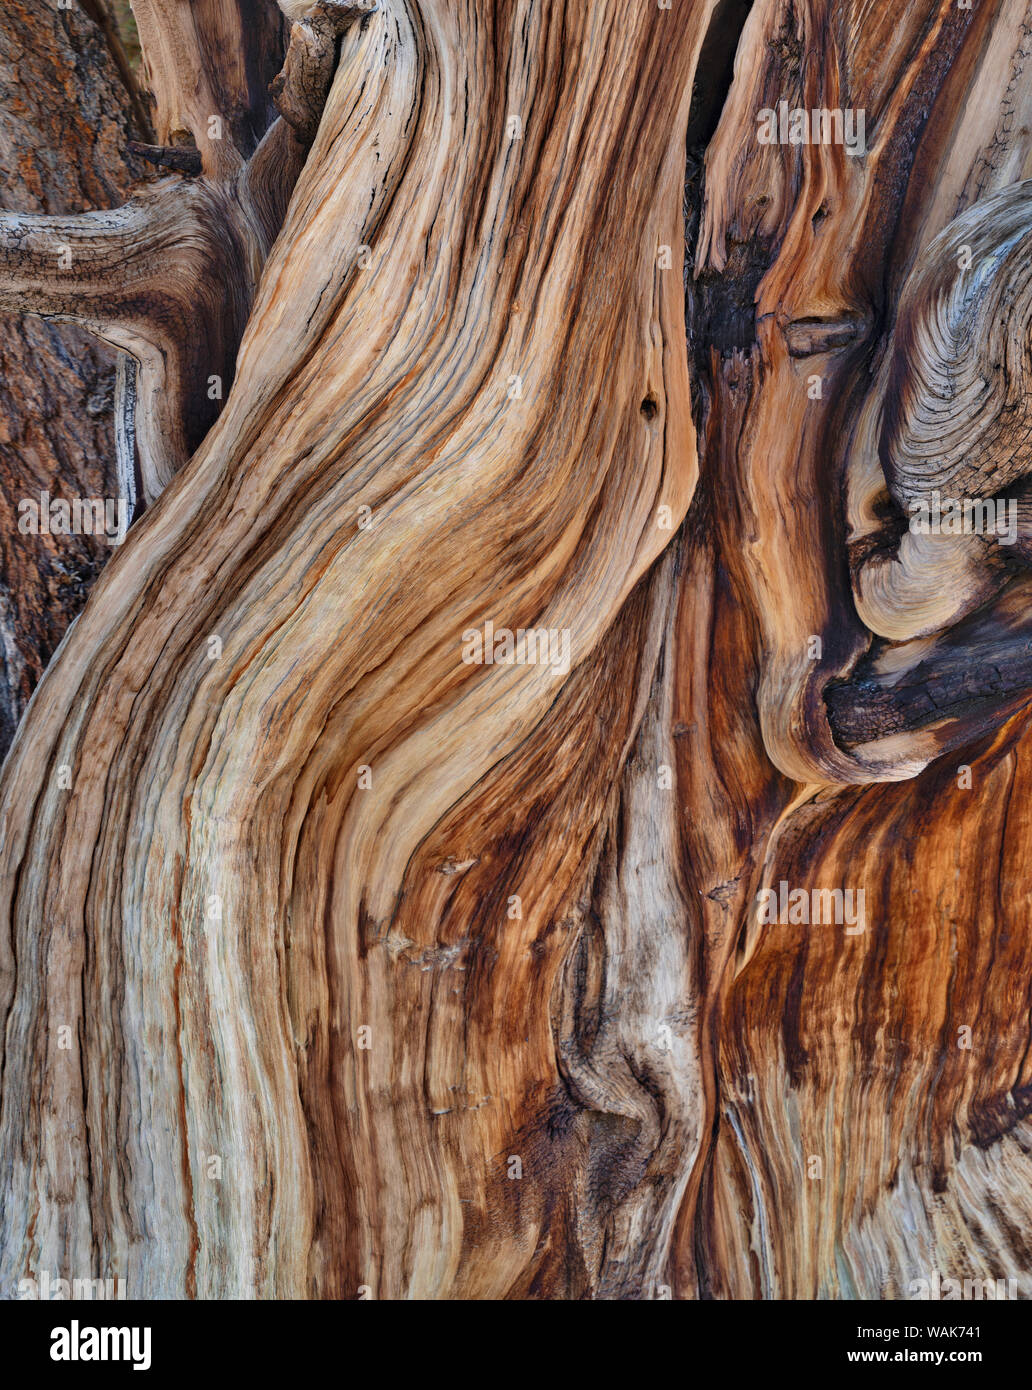 USA, Eastern Sierra, White Mountains, bristlecone pines Stock Photo